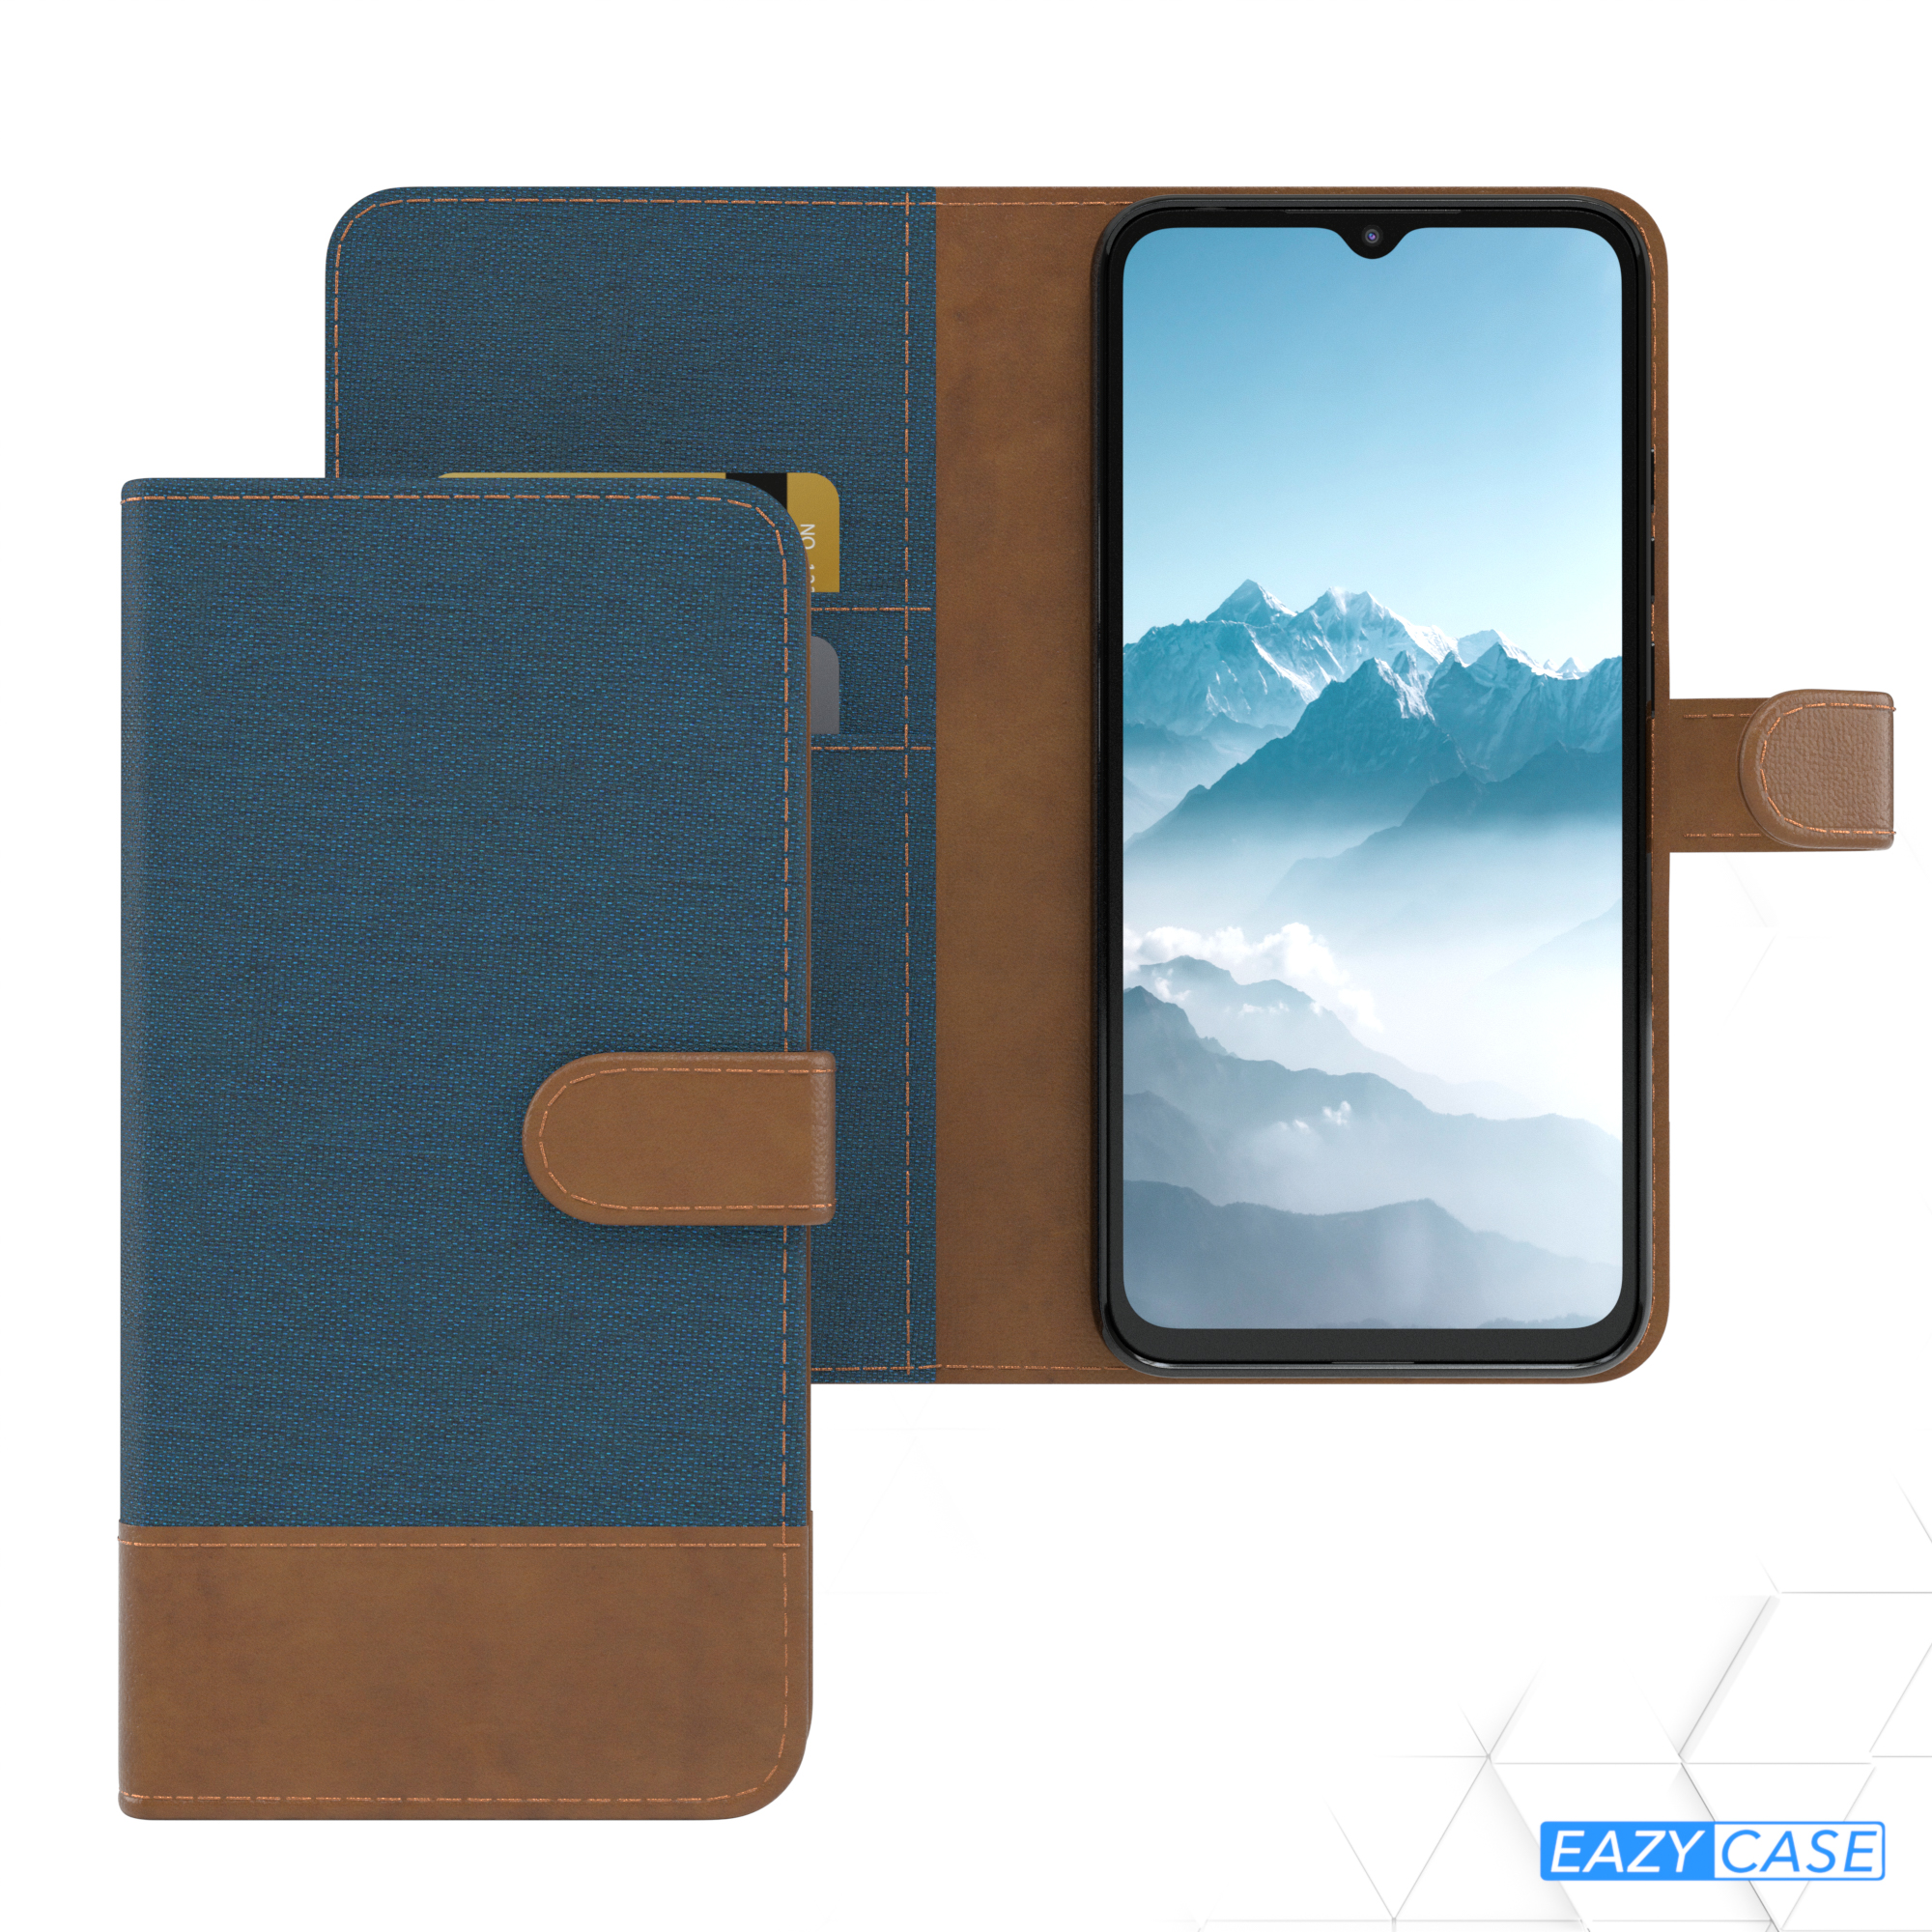 EAZY CASE Bookstyle Klapphülle Redmi 9C, Kartenfach, mit Bookcover, Blau Jeans Xiaomi